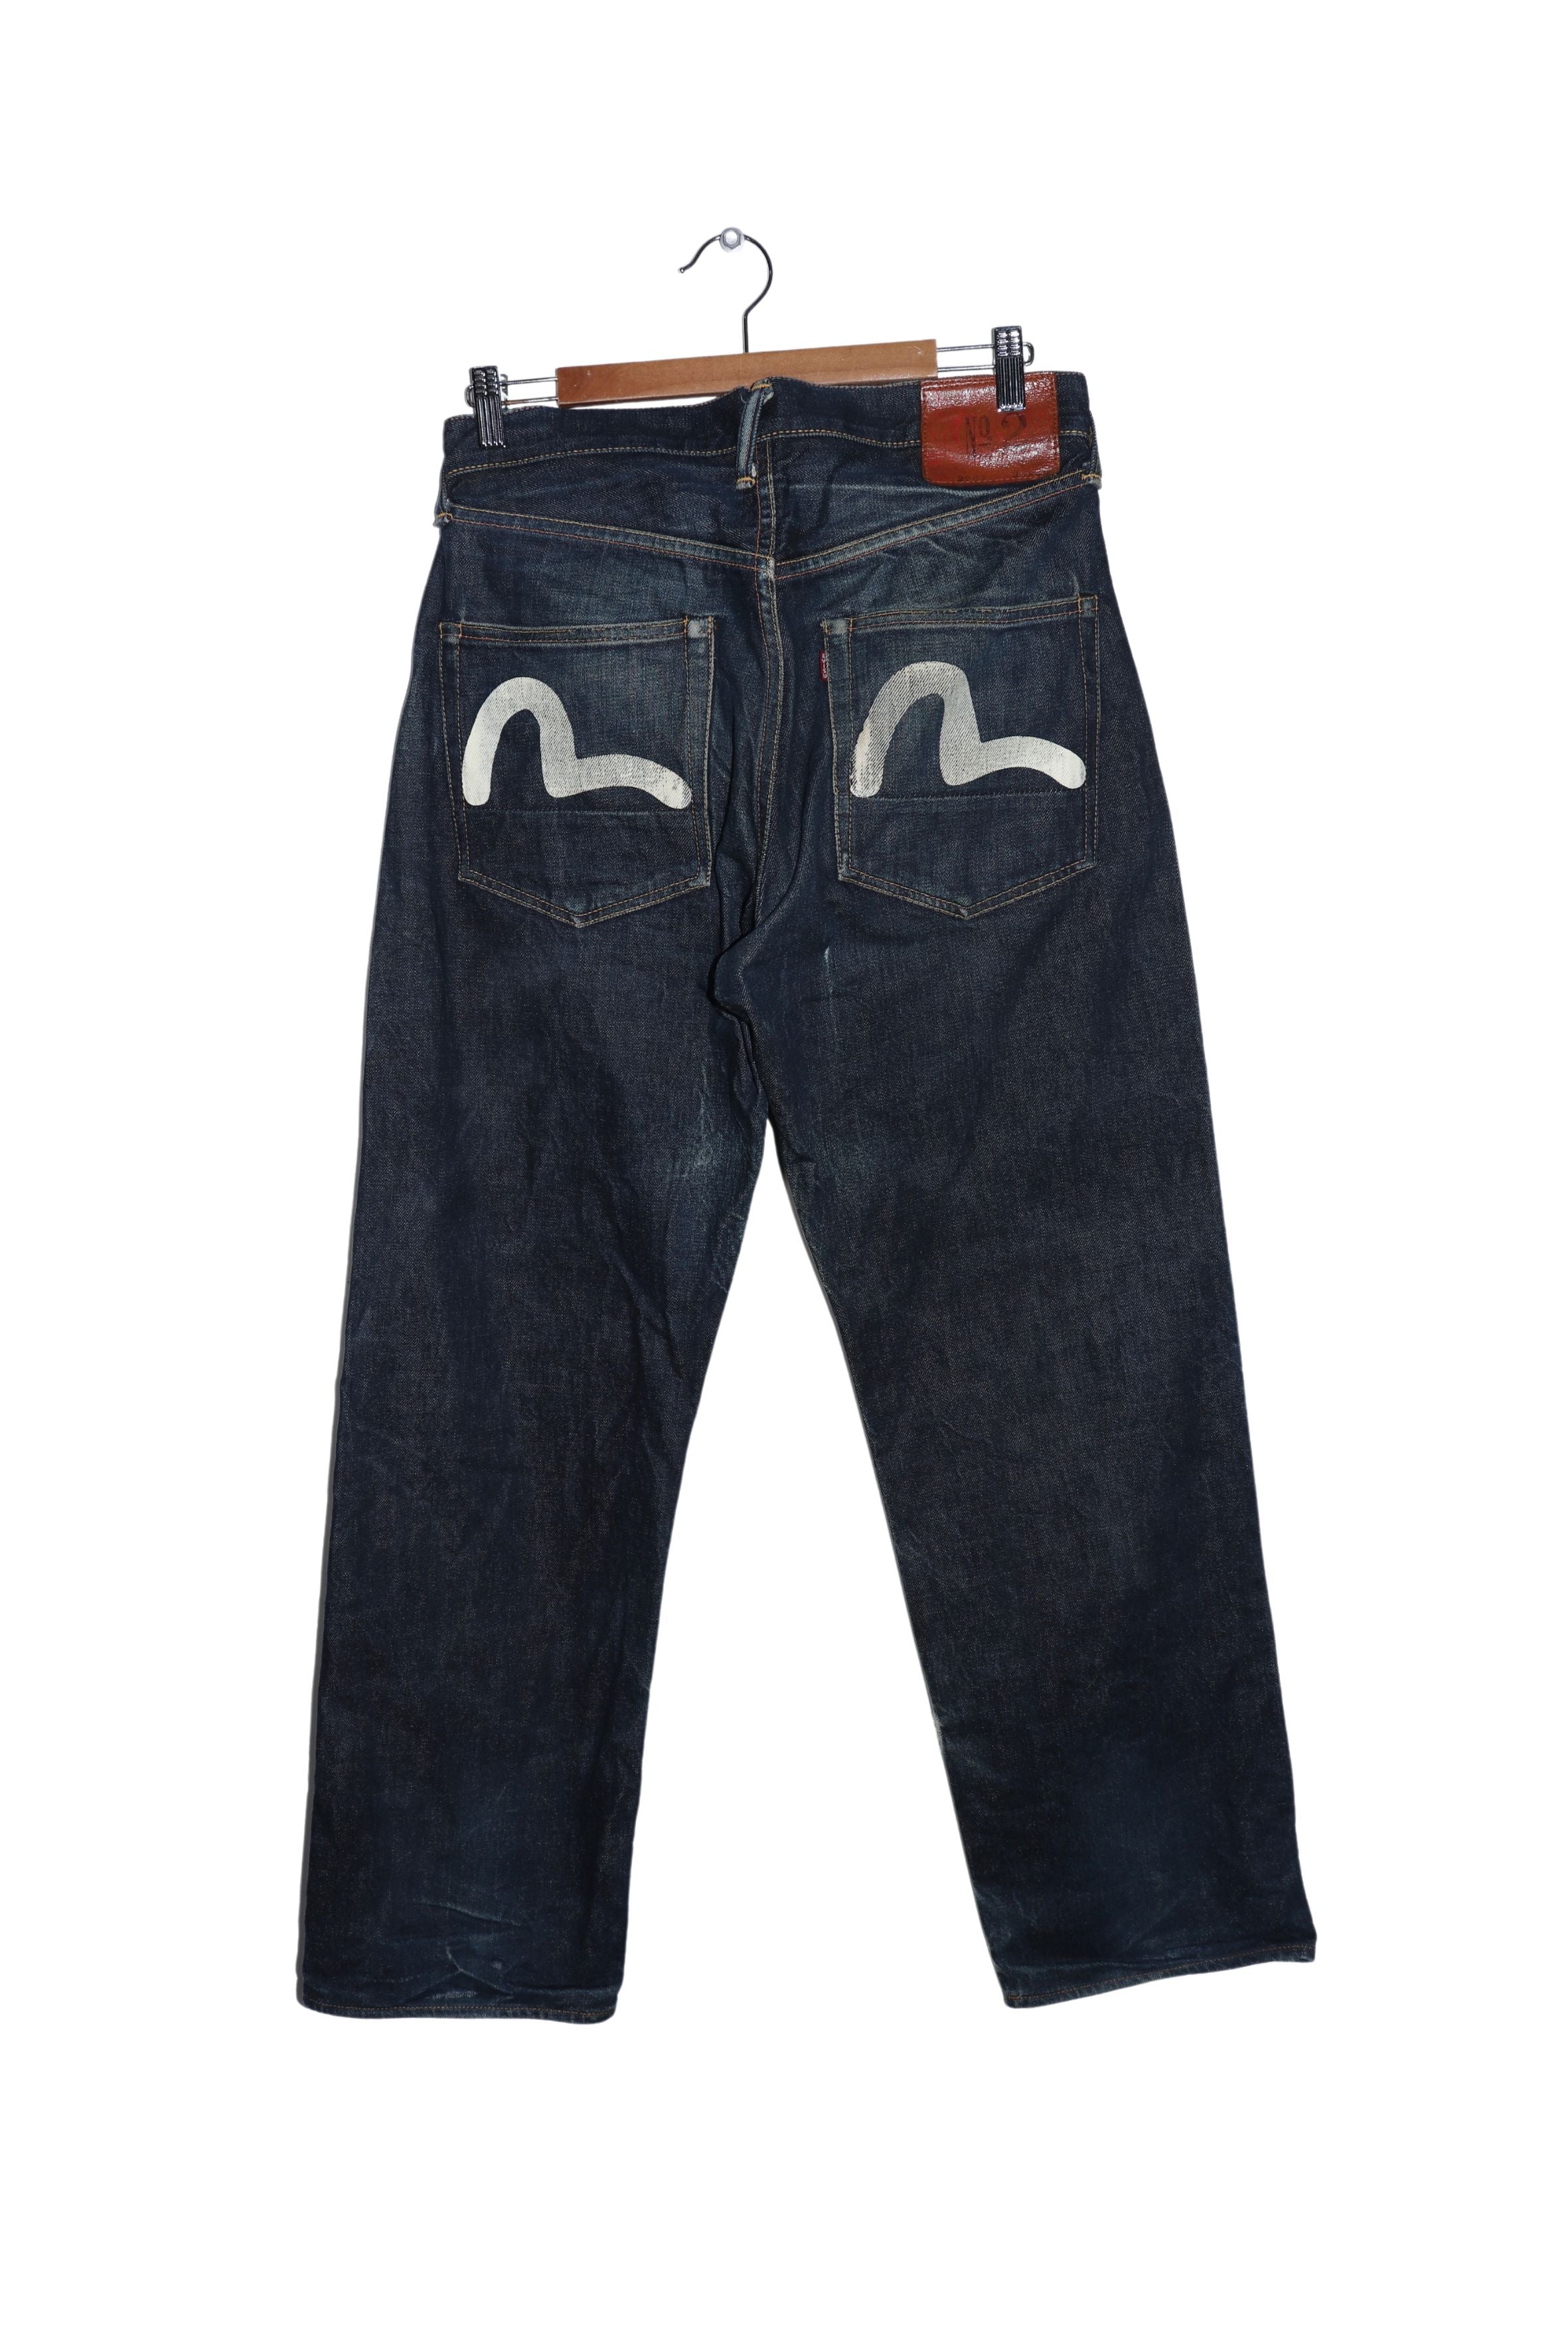 Vintage Evisu Hand Painted Logo Dark Wash Denim Jeans (2001)